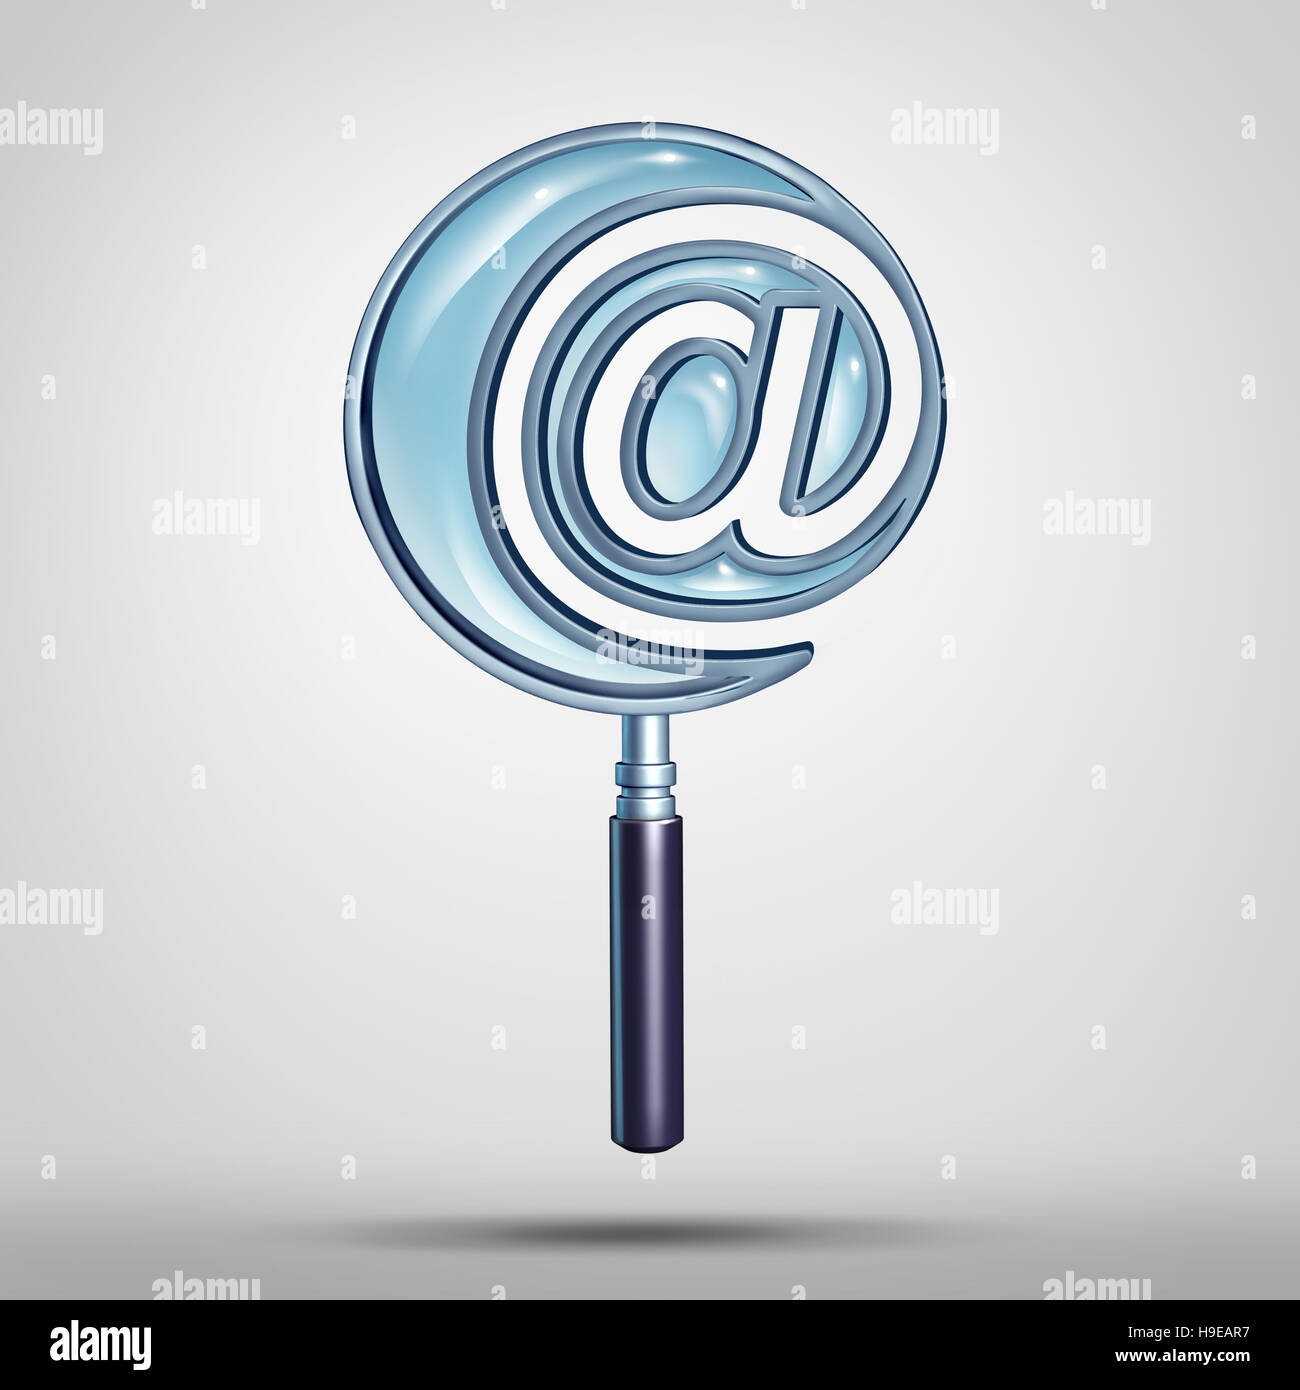 E-mail e internet ricerca concetto tecnologico come una lente di ingrandimento conformata come un messaggio di posta elettronica o simbolo simbolo icona come cyber e l'indirizzo del sito metafora Foto Stock